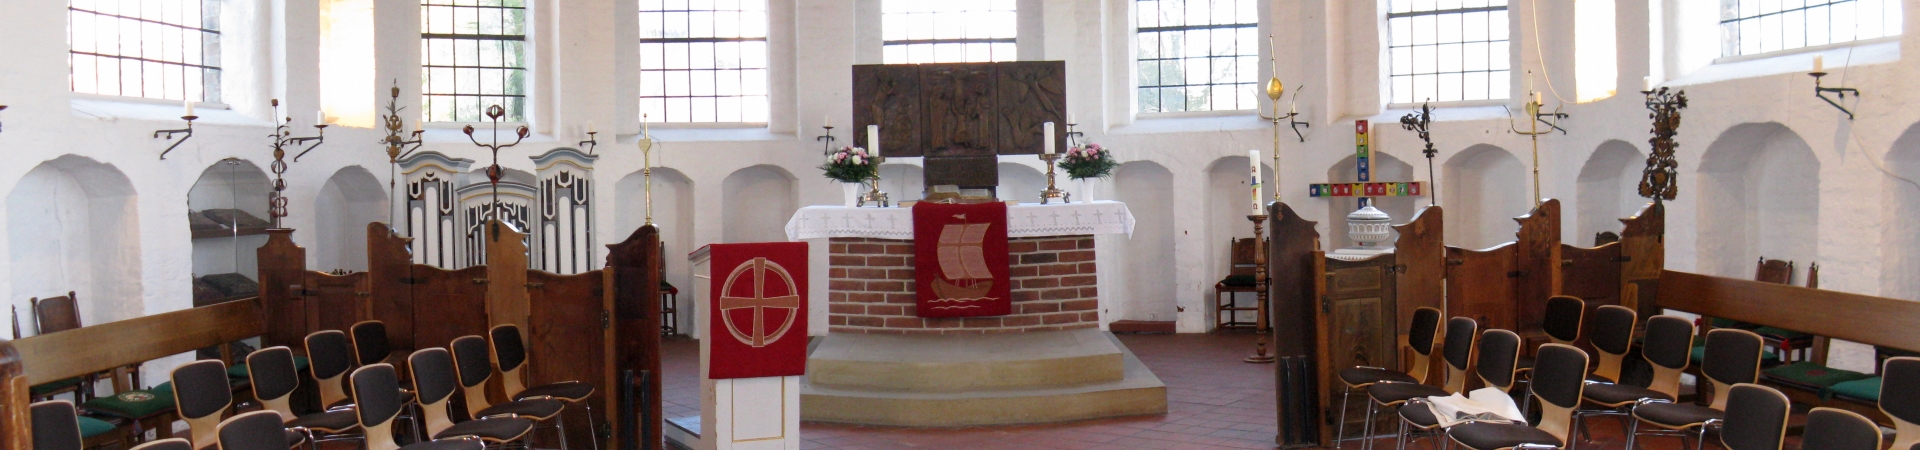 Kirchengemeinde St. Johannis zu Neuengamme